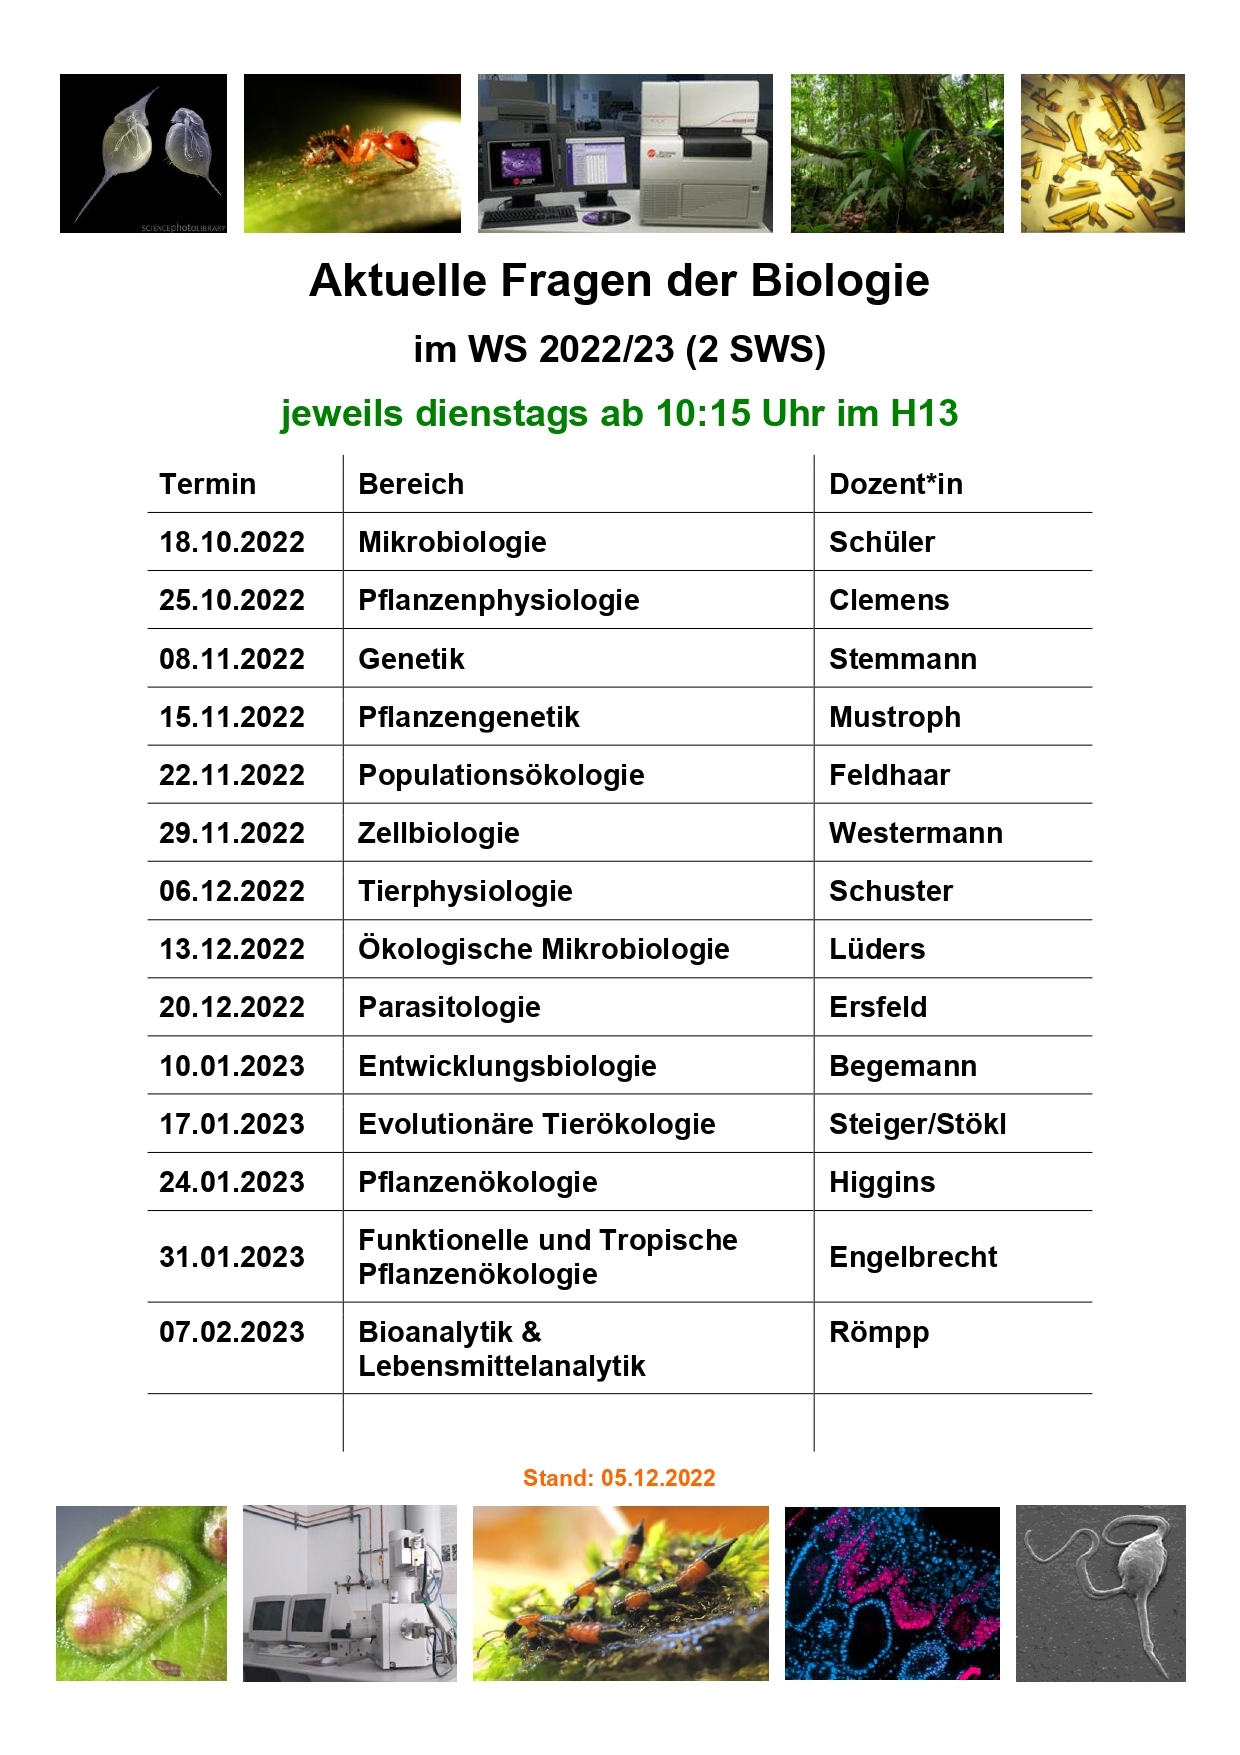 Aktuelle_Fragen_der_Biologie_WS202223_05.12.2022